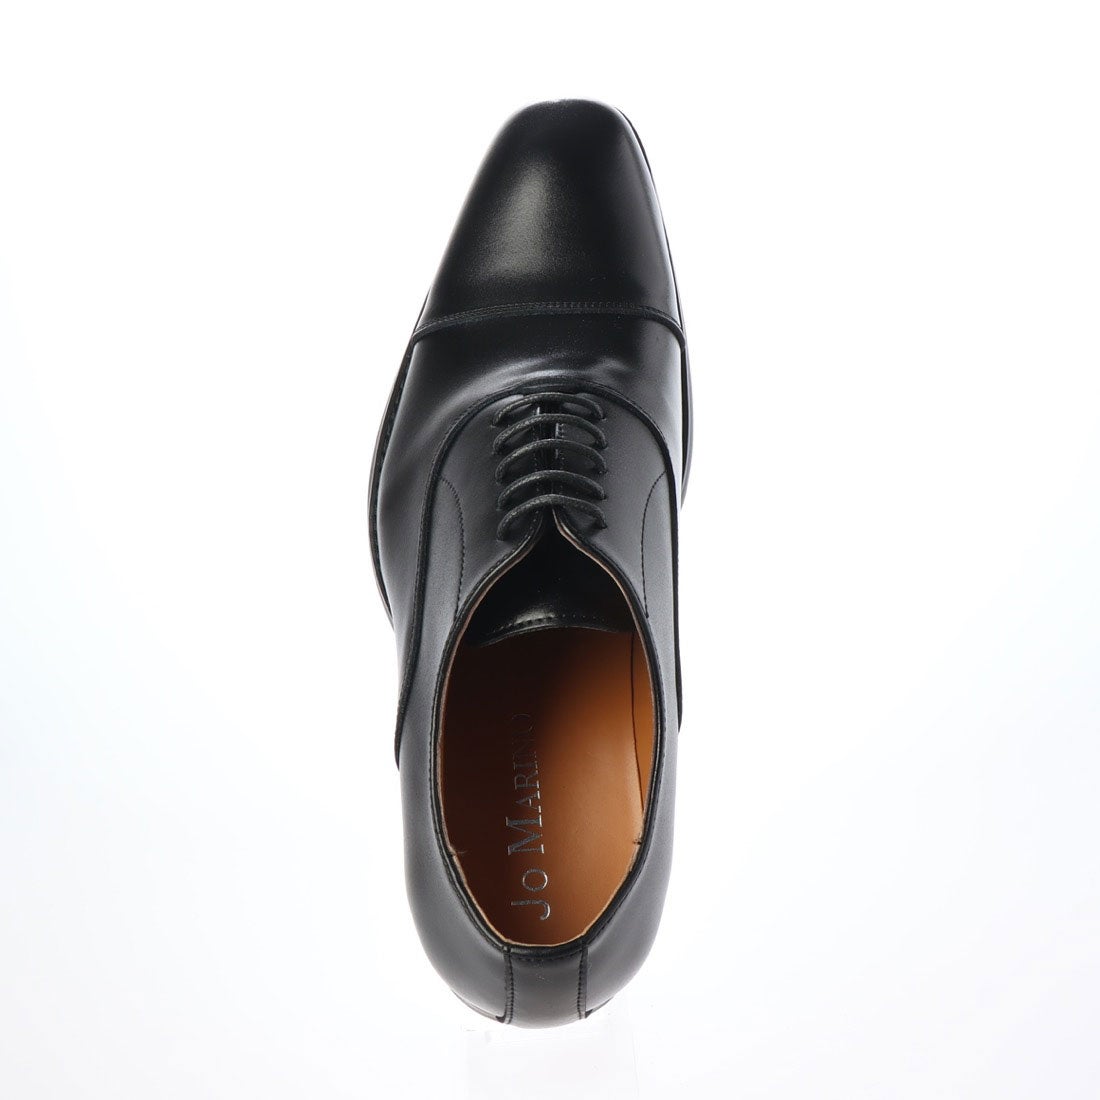 送料無料でお届けします h-23JO MARINO 日本製 本革ビジネスシューズ 紳士靴